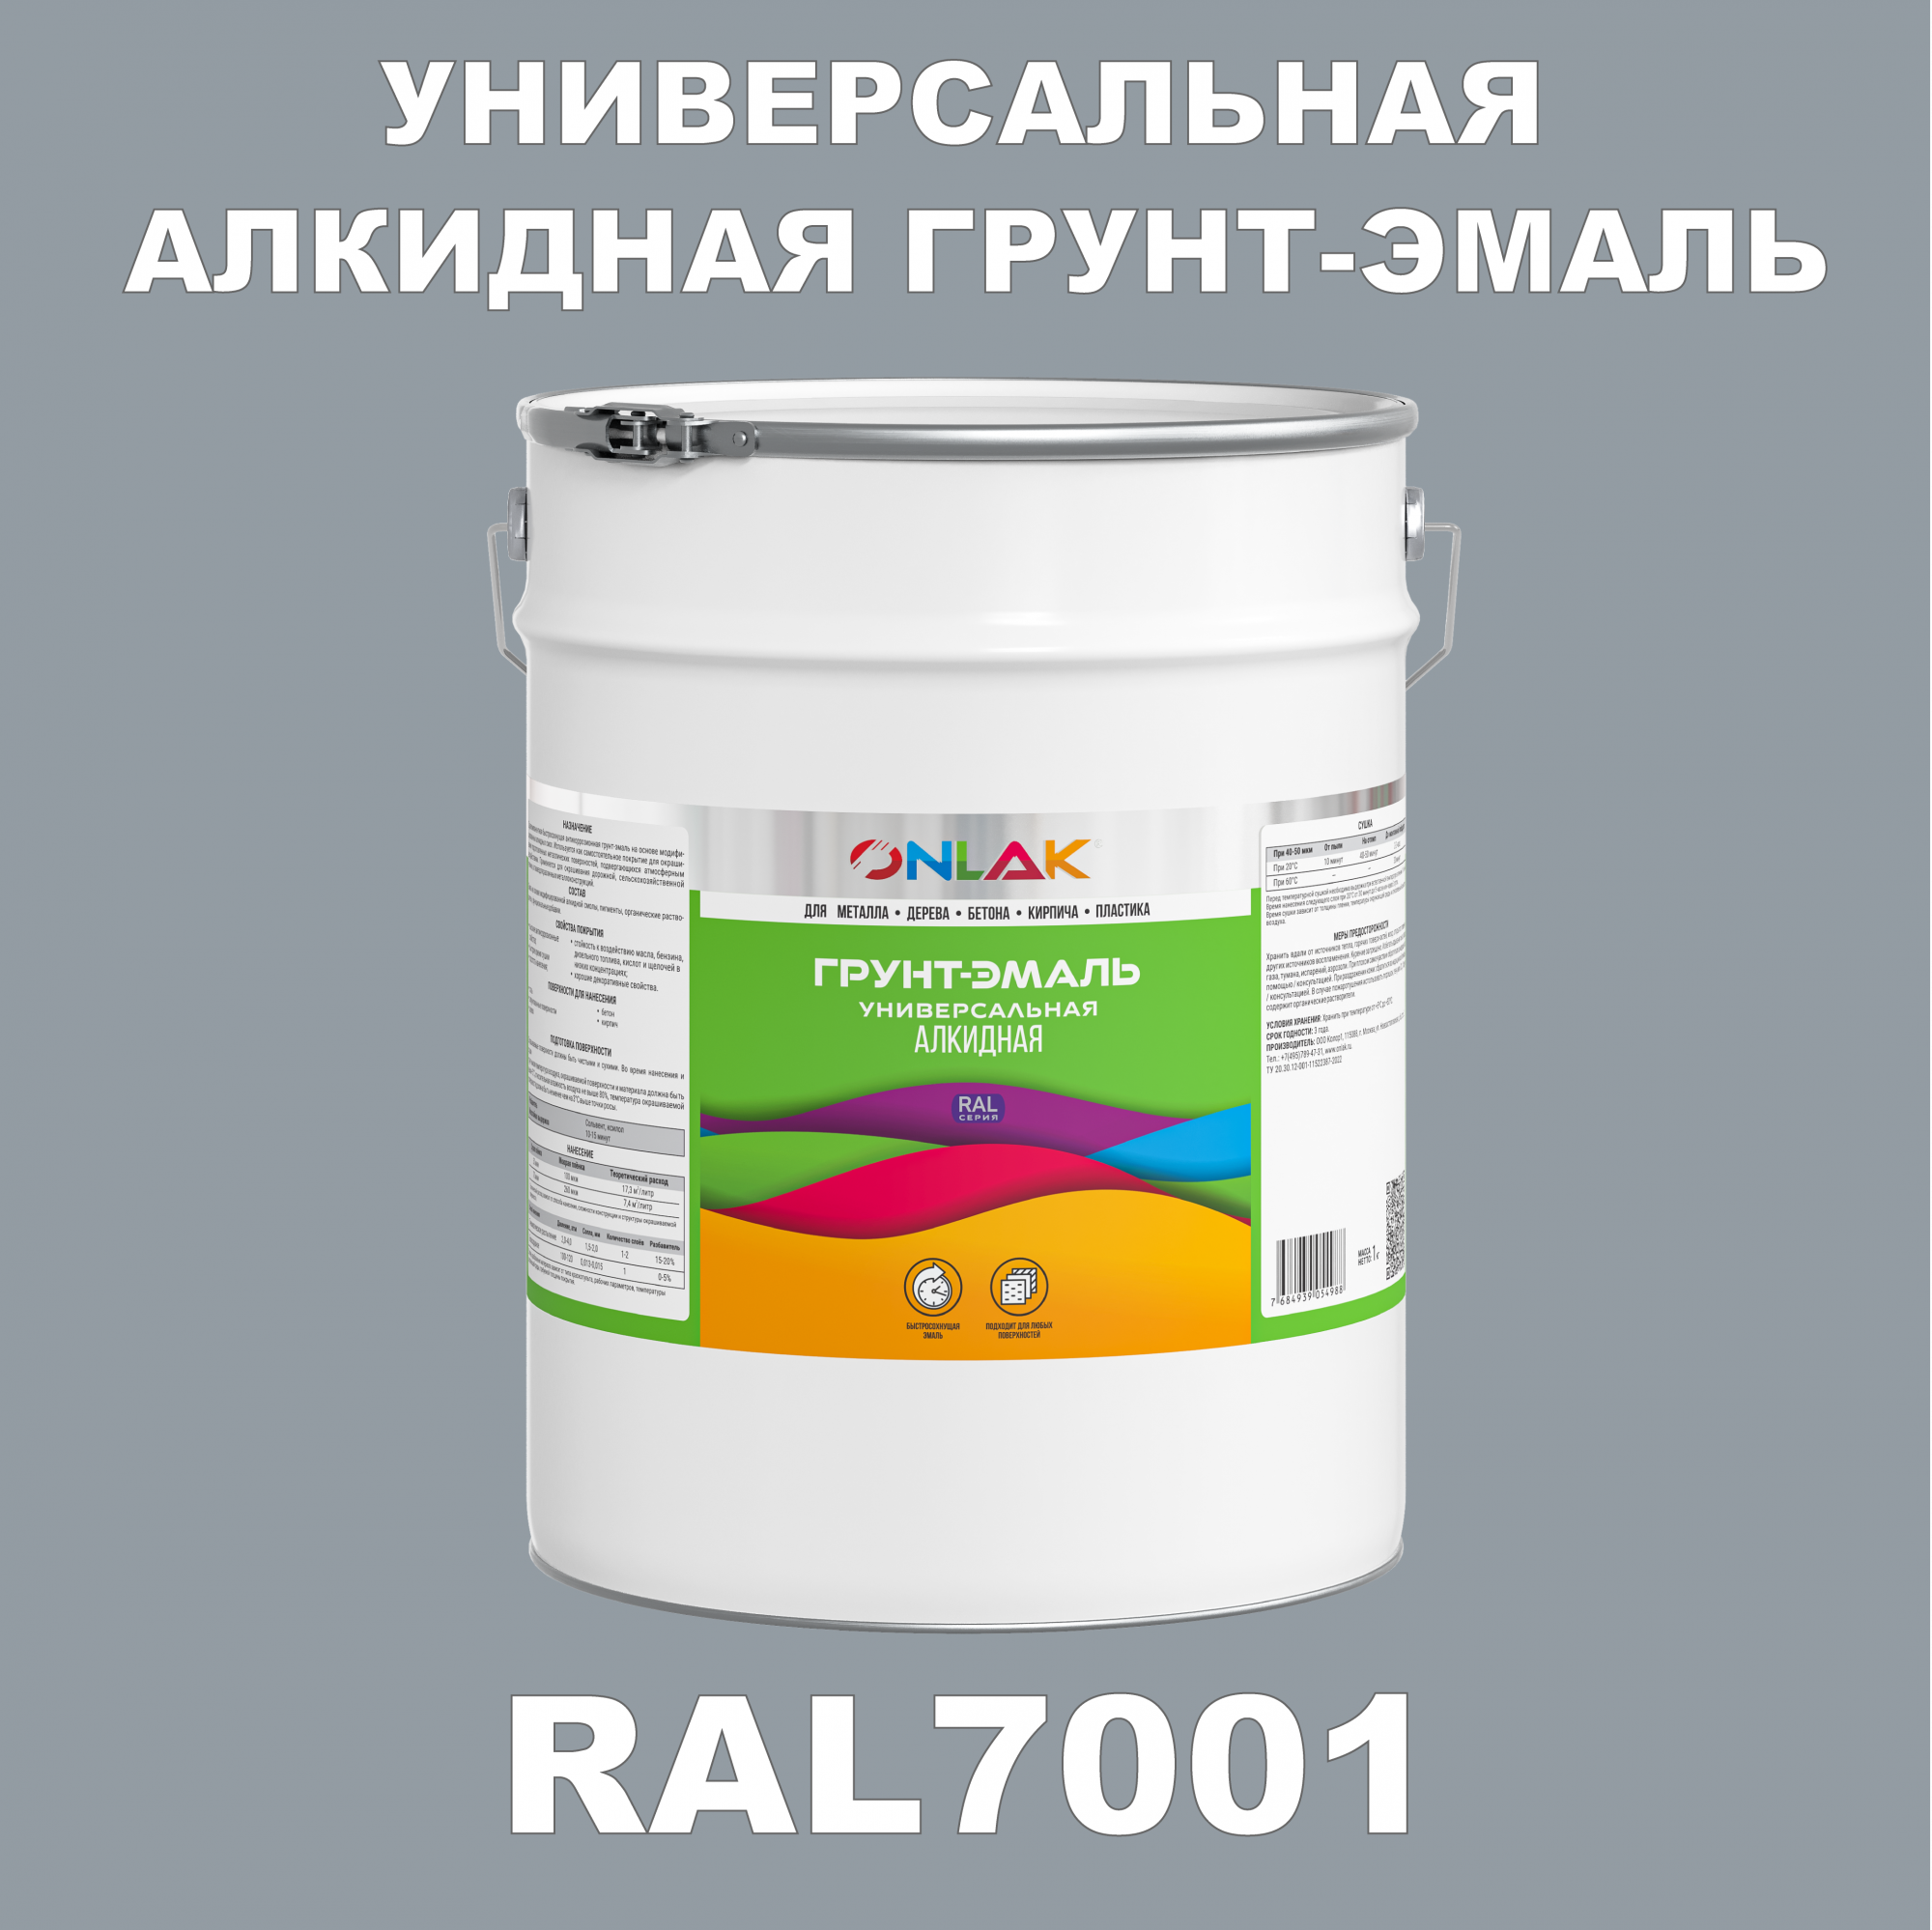 Грунт-эмаль ONLAK 1К RAL7001 антикоррозионная алкидная по металлу по ржавчине 20 кг грунт эмаль престиж по ржавчине алкидная зеленая 1 9 кг